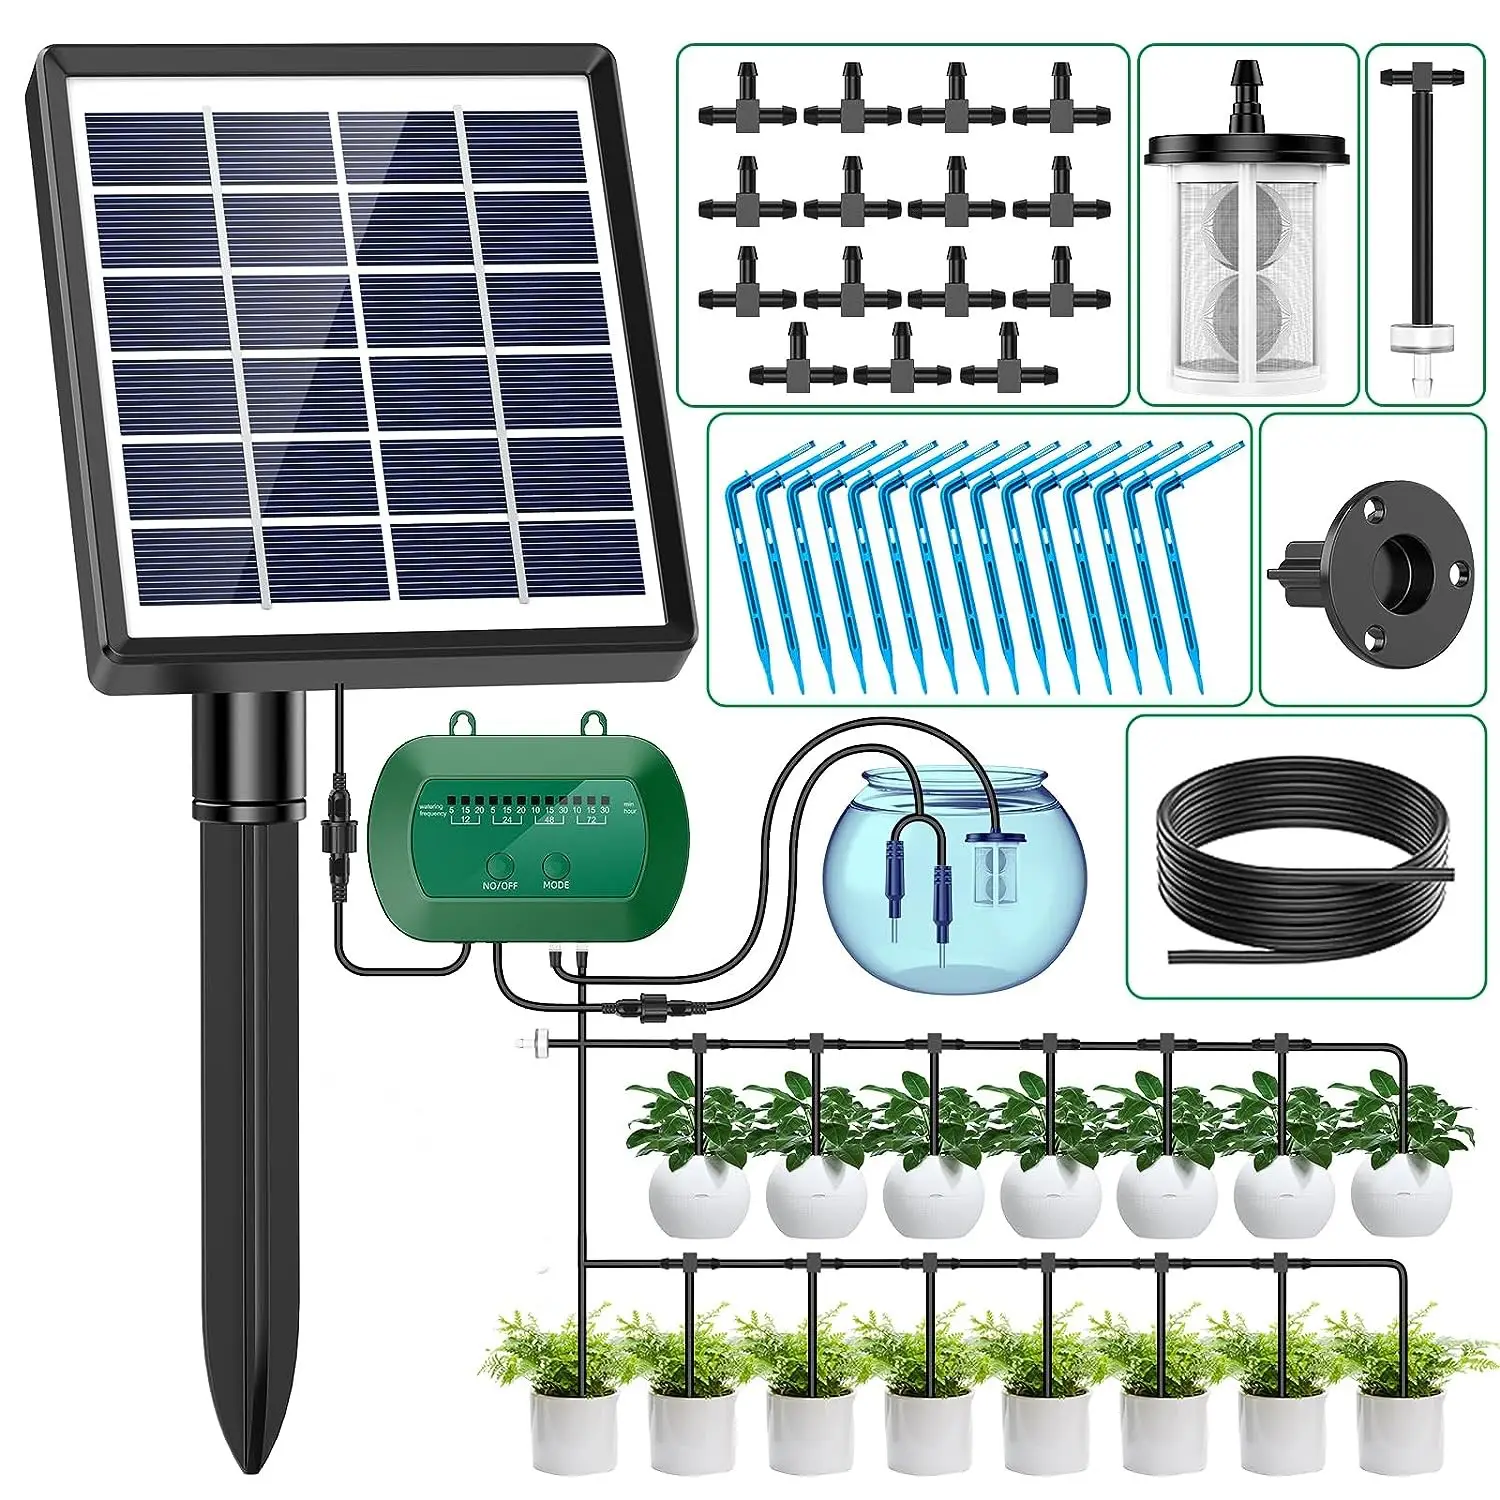 מערכת השקיה סולארית עבור ערכת השקיה בטפטוף גינה לצמחים בעלי מערכת השקיה אוטומטית מערכת השקיה אוטומטית